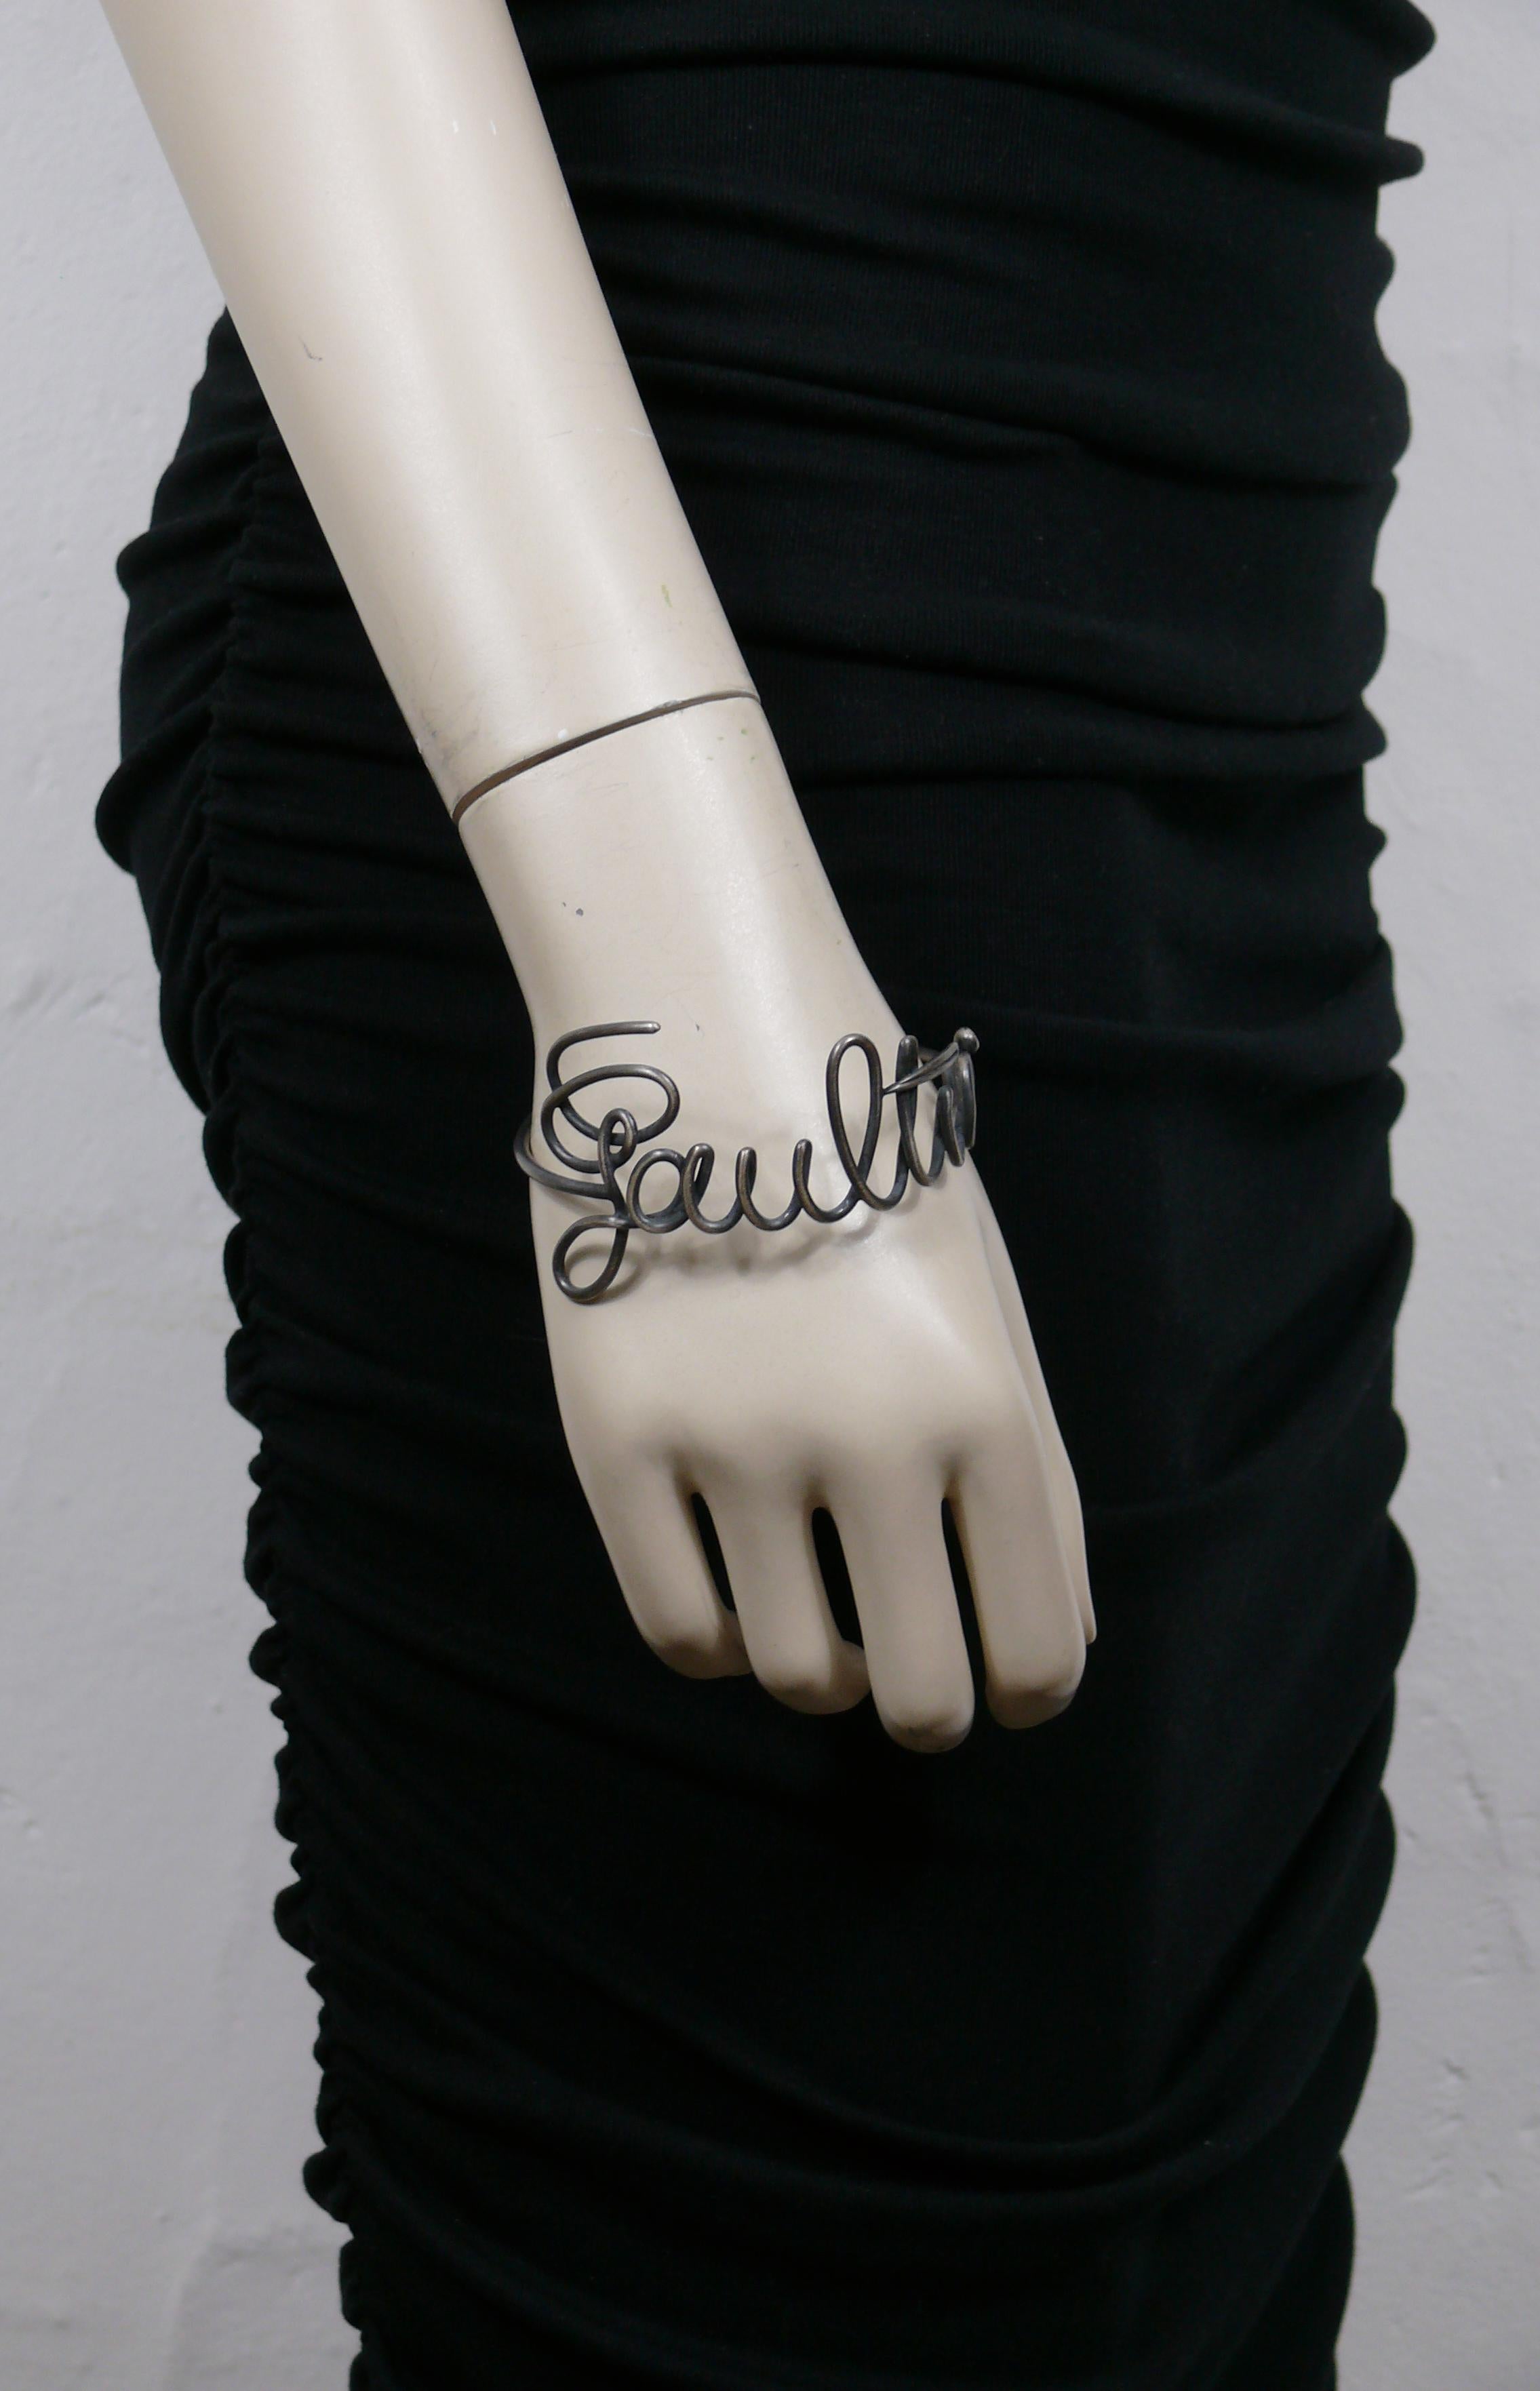 JEAN PAUL GAULTIER Bracelet-bracelet vintage en métal gun avec la signature cursive de GAULTIER.

S'enfile (pas de fermoir).

Non marqué.

Mesures indicatives : circonférence d'environ 20,73 cm (8,16 pouces) / largeur maximale d'environ 4 cm (1,57